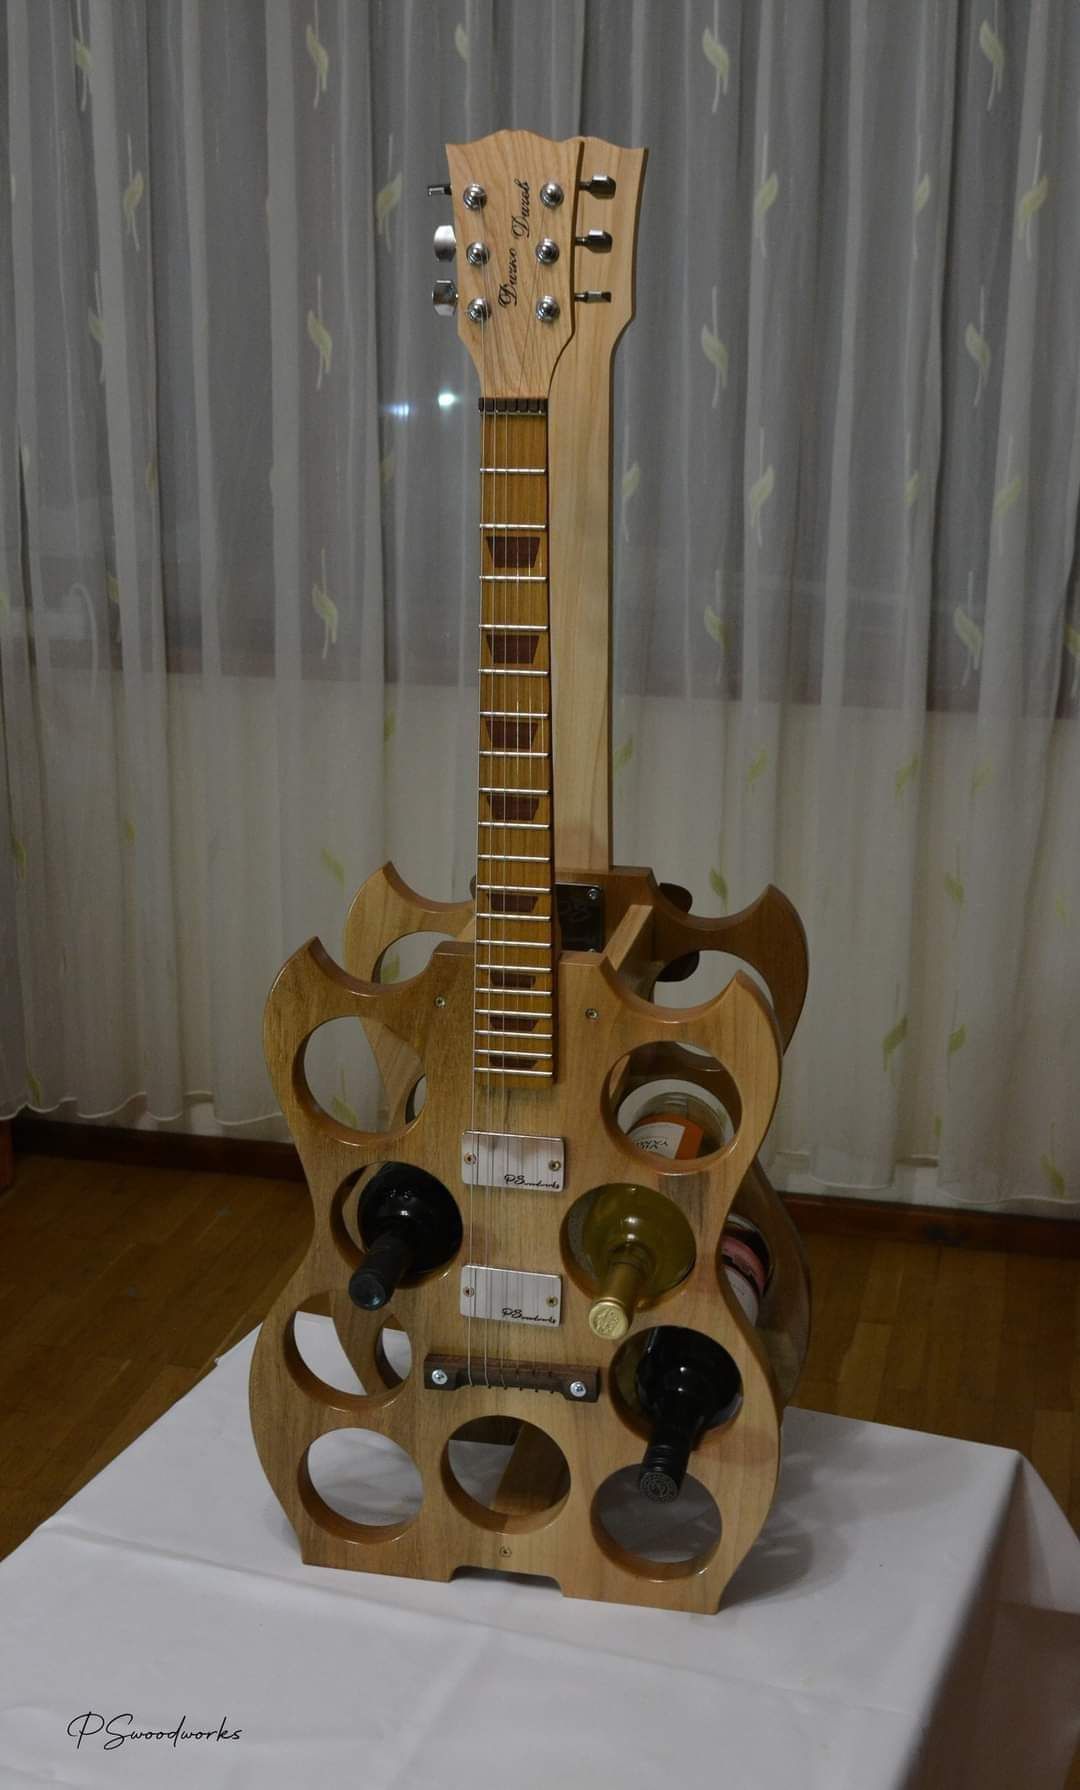 Поставка за вино с форма на китара.